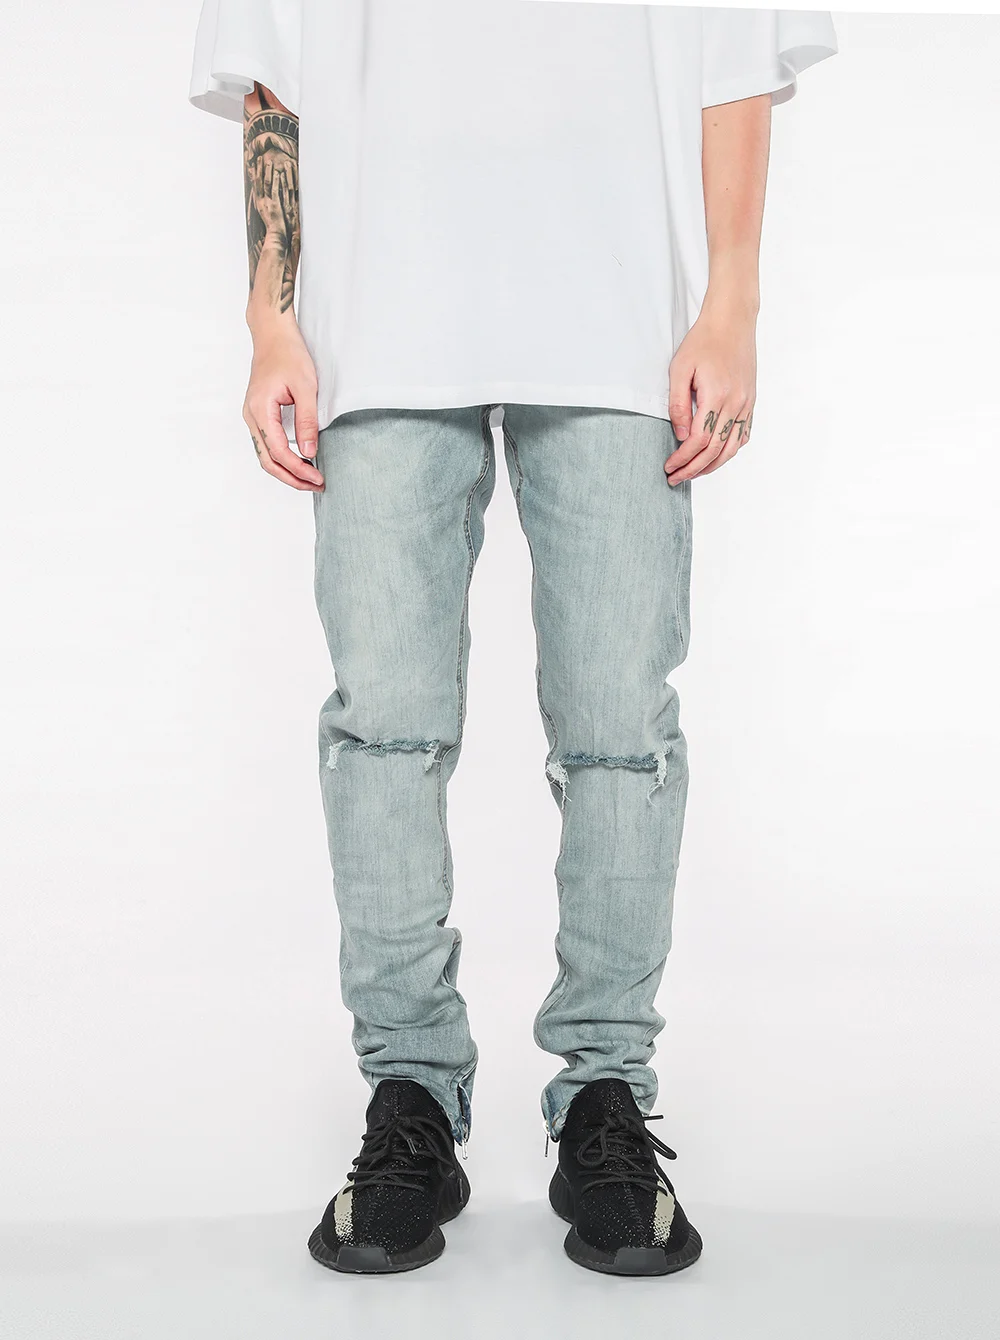 Рваные джинсы для Для мужчин хип-хоп Super Skinny синий Для мужчин Ankle zipper jeans эластичные штаны дизайнерские брендовые Модные Slim Fit Рваные брюки